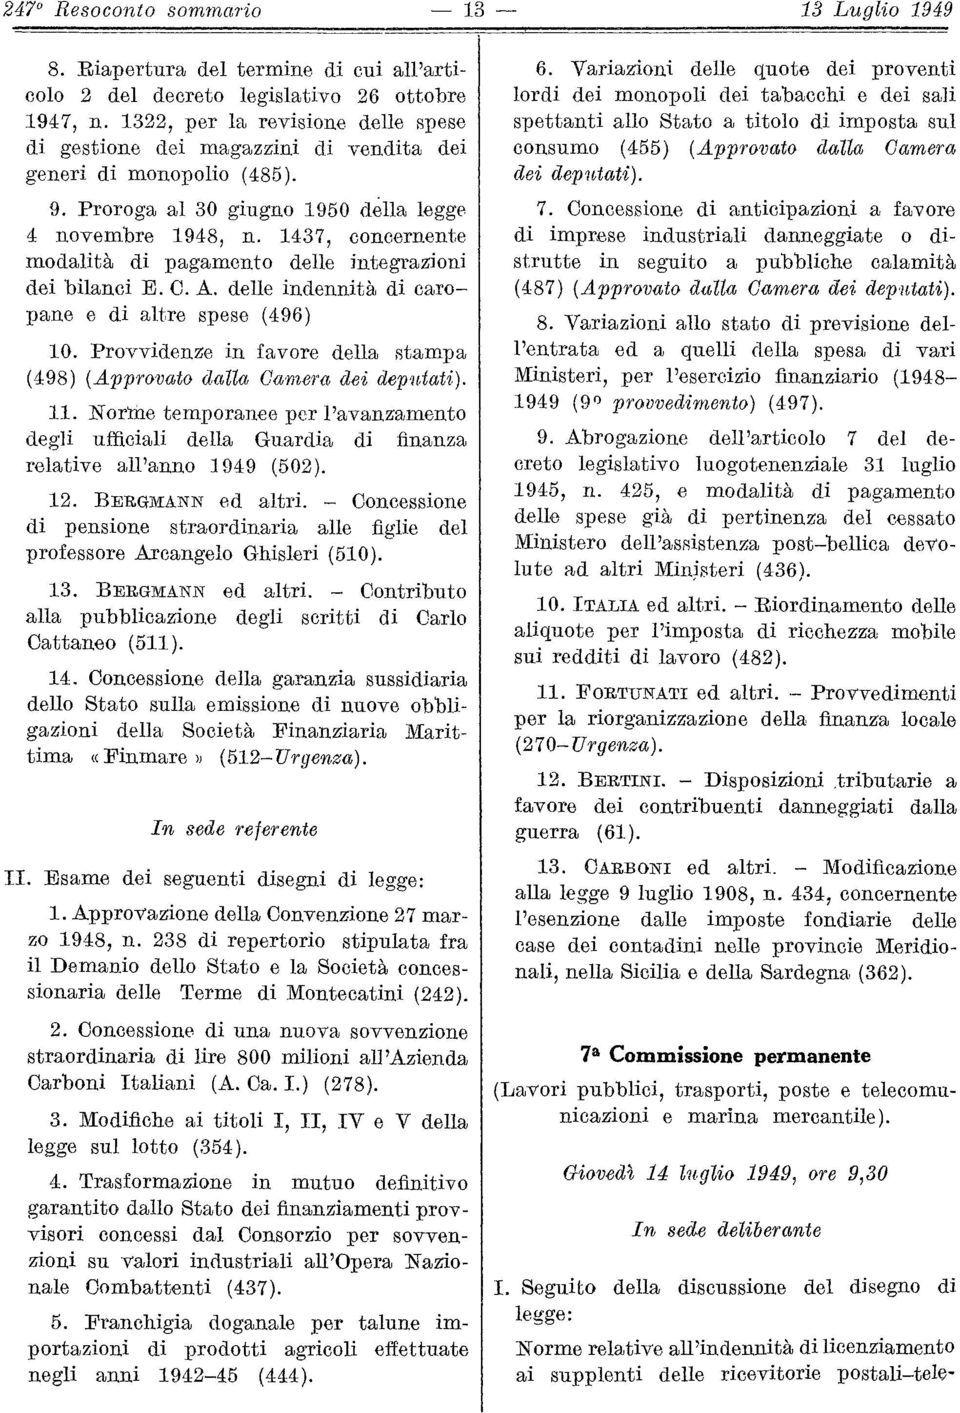 1437, concernente modalità di pagamento delle integrazioni dei bilanci E. C. A. delle indennità di caropane e di altre spese (496) 10.